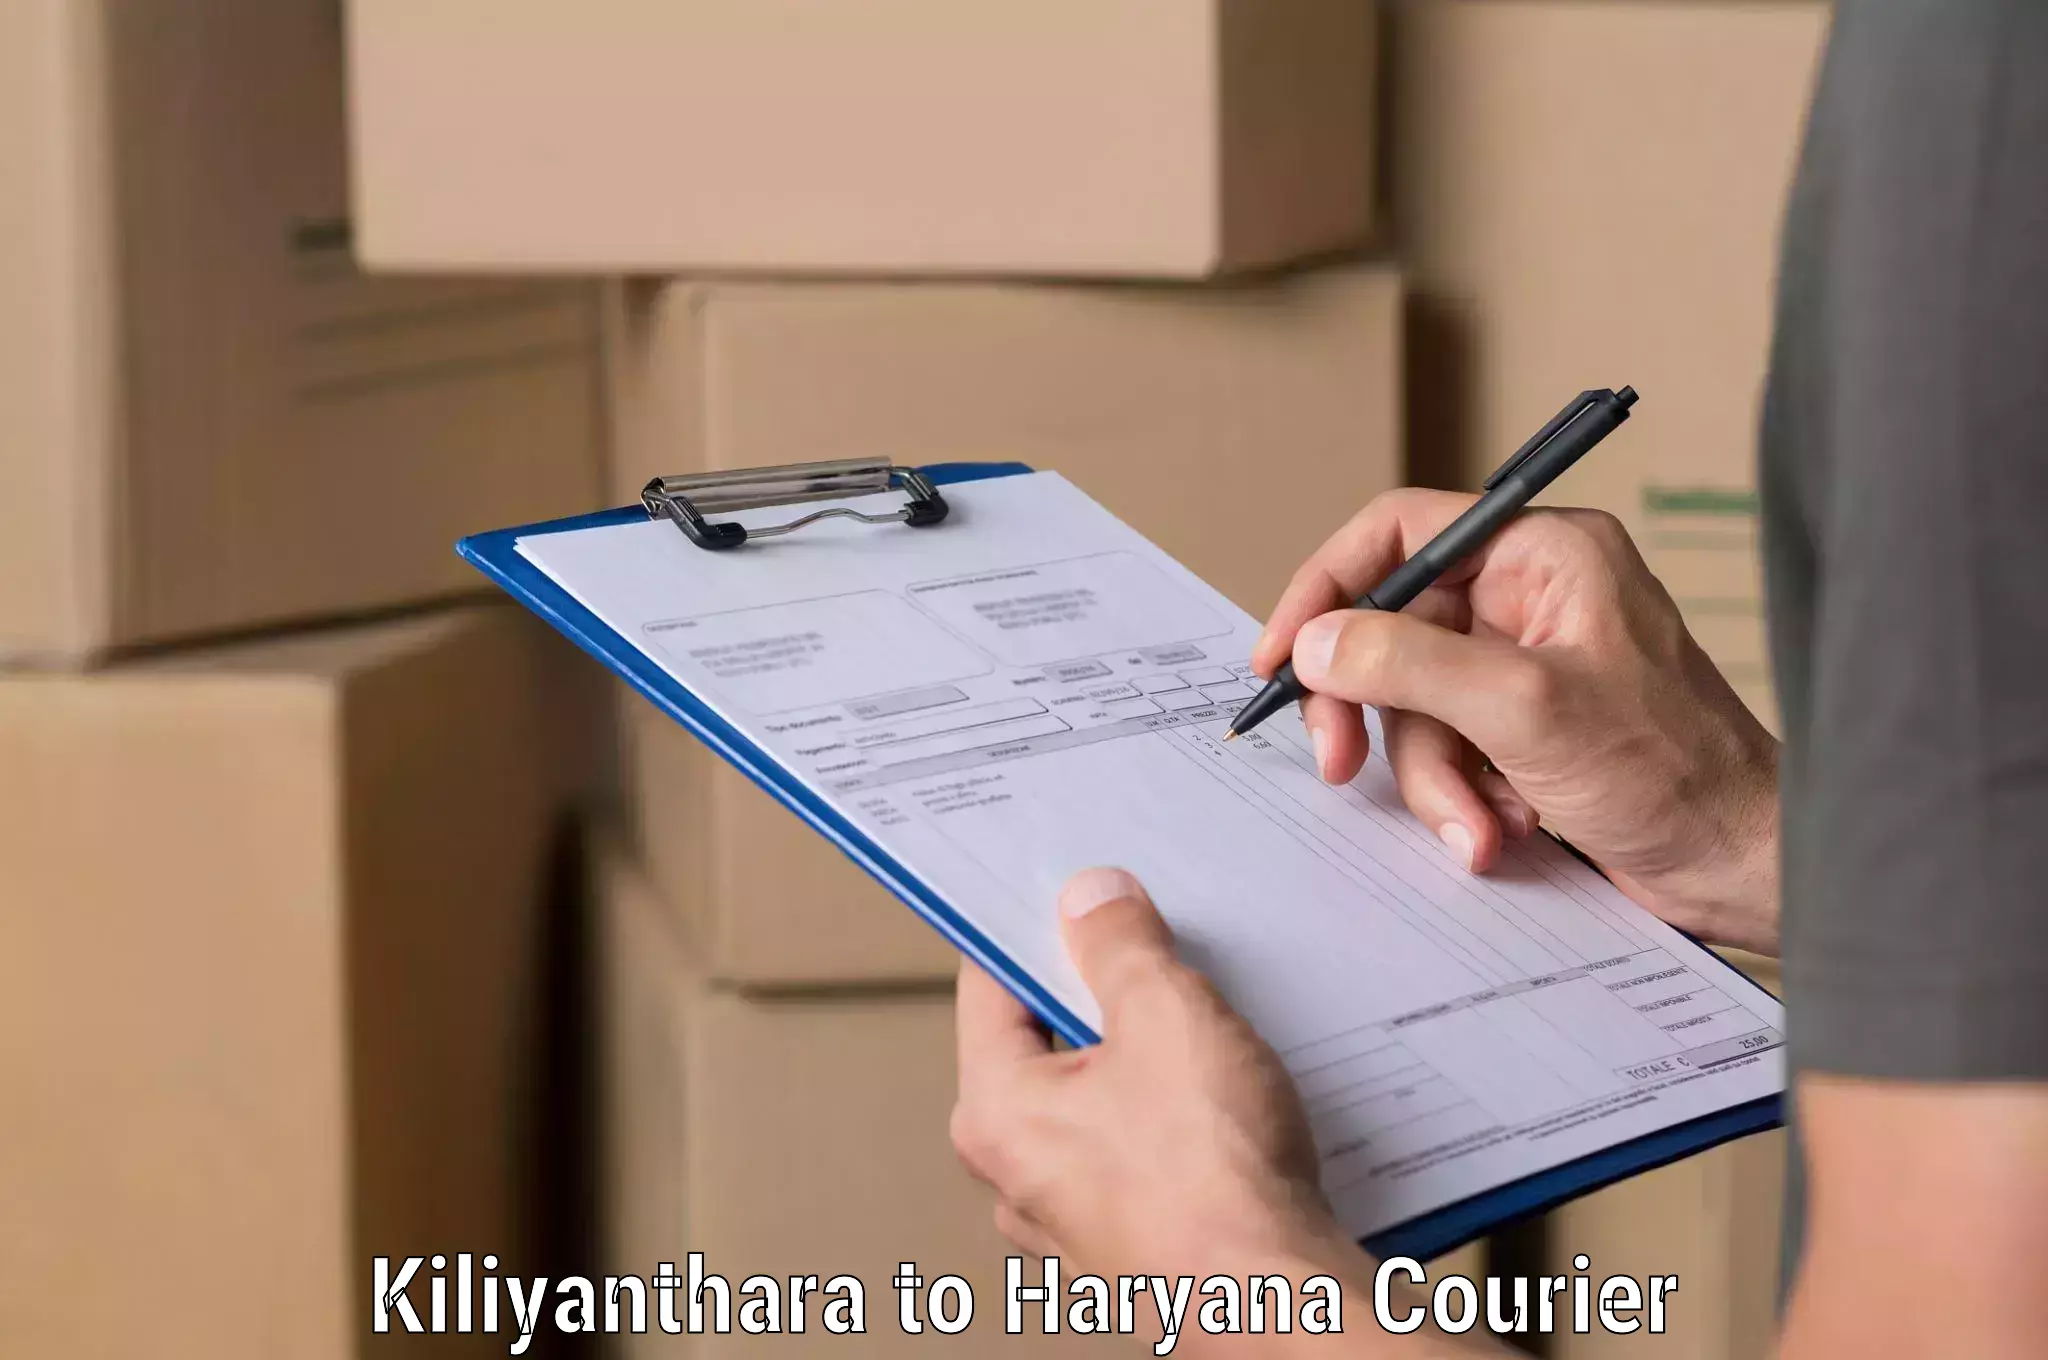 Digital courier platforms Kiliyanthara to Hansi